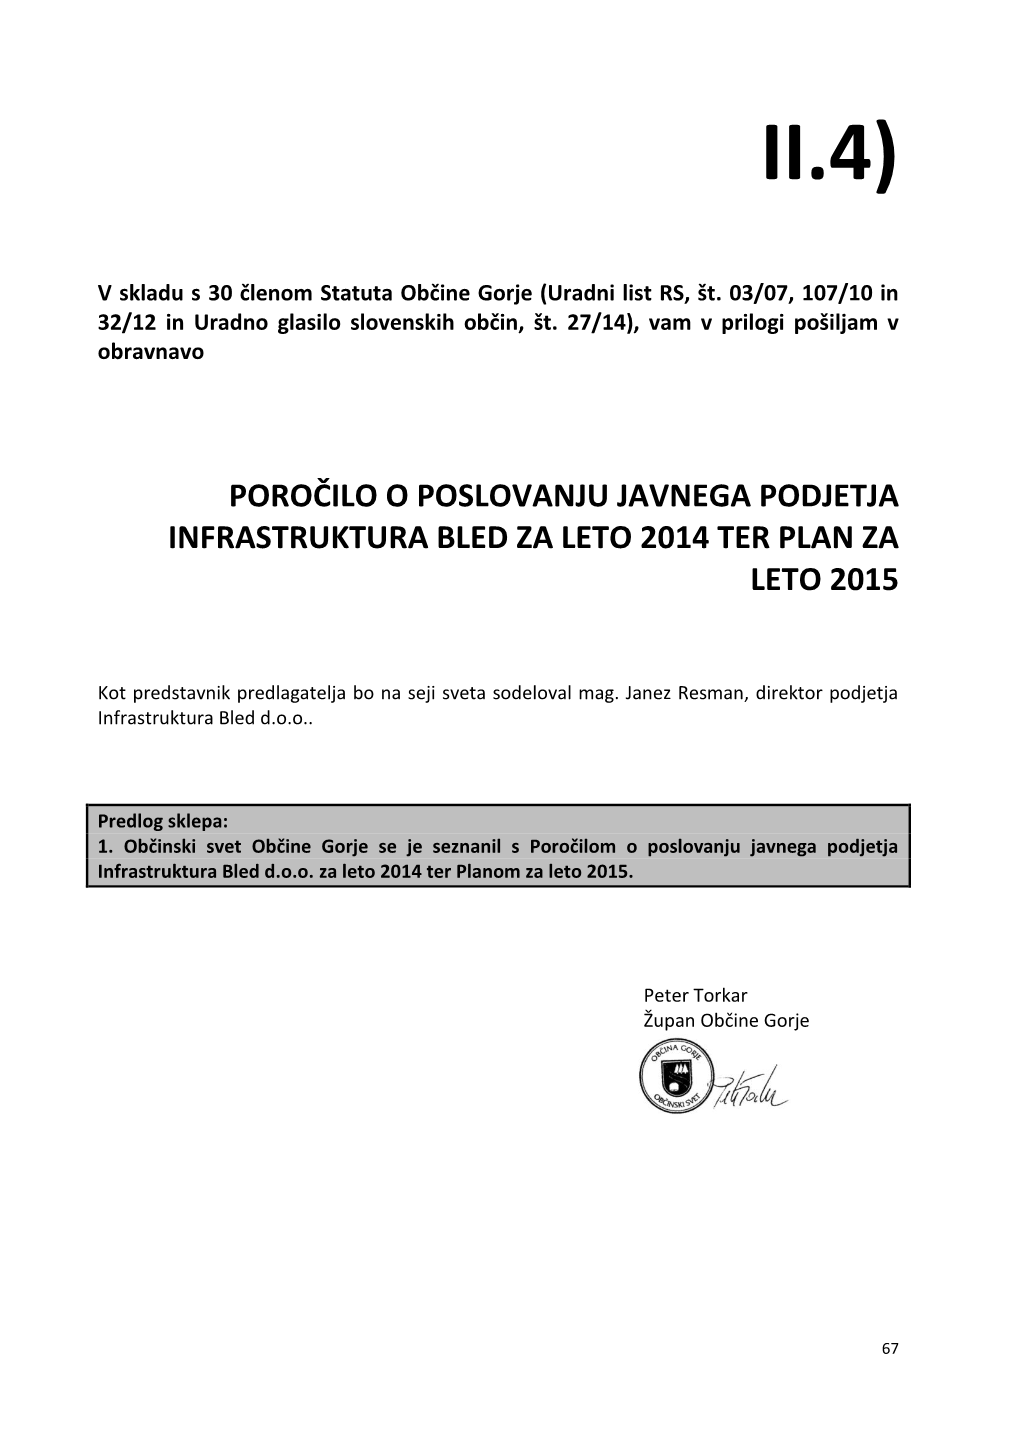 Poročilo O Poslovanju Javnega Podjetja Infrastruktura Bled Za Leto 2014 Ter Plan Za Leto 2015